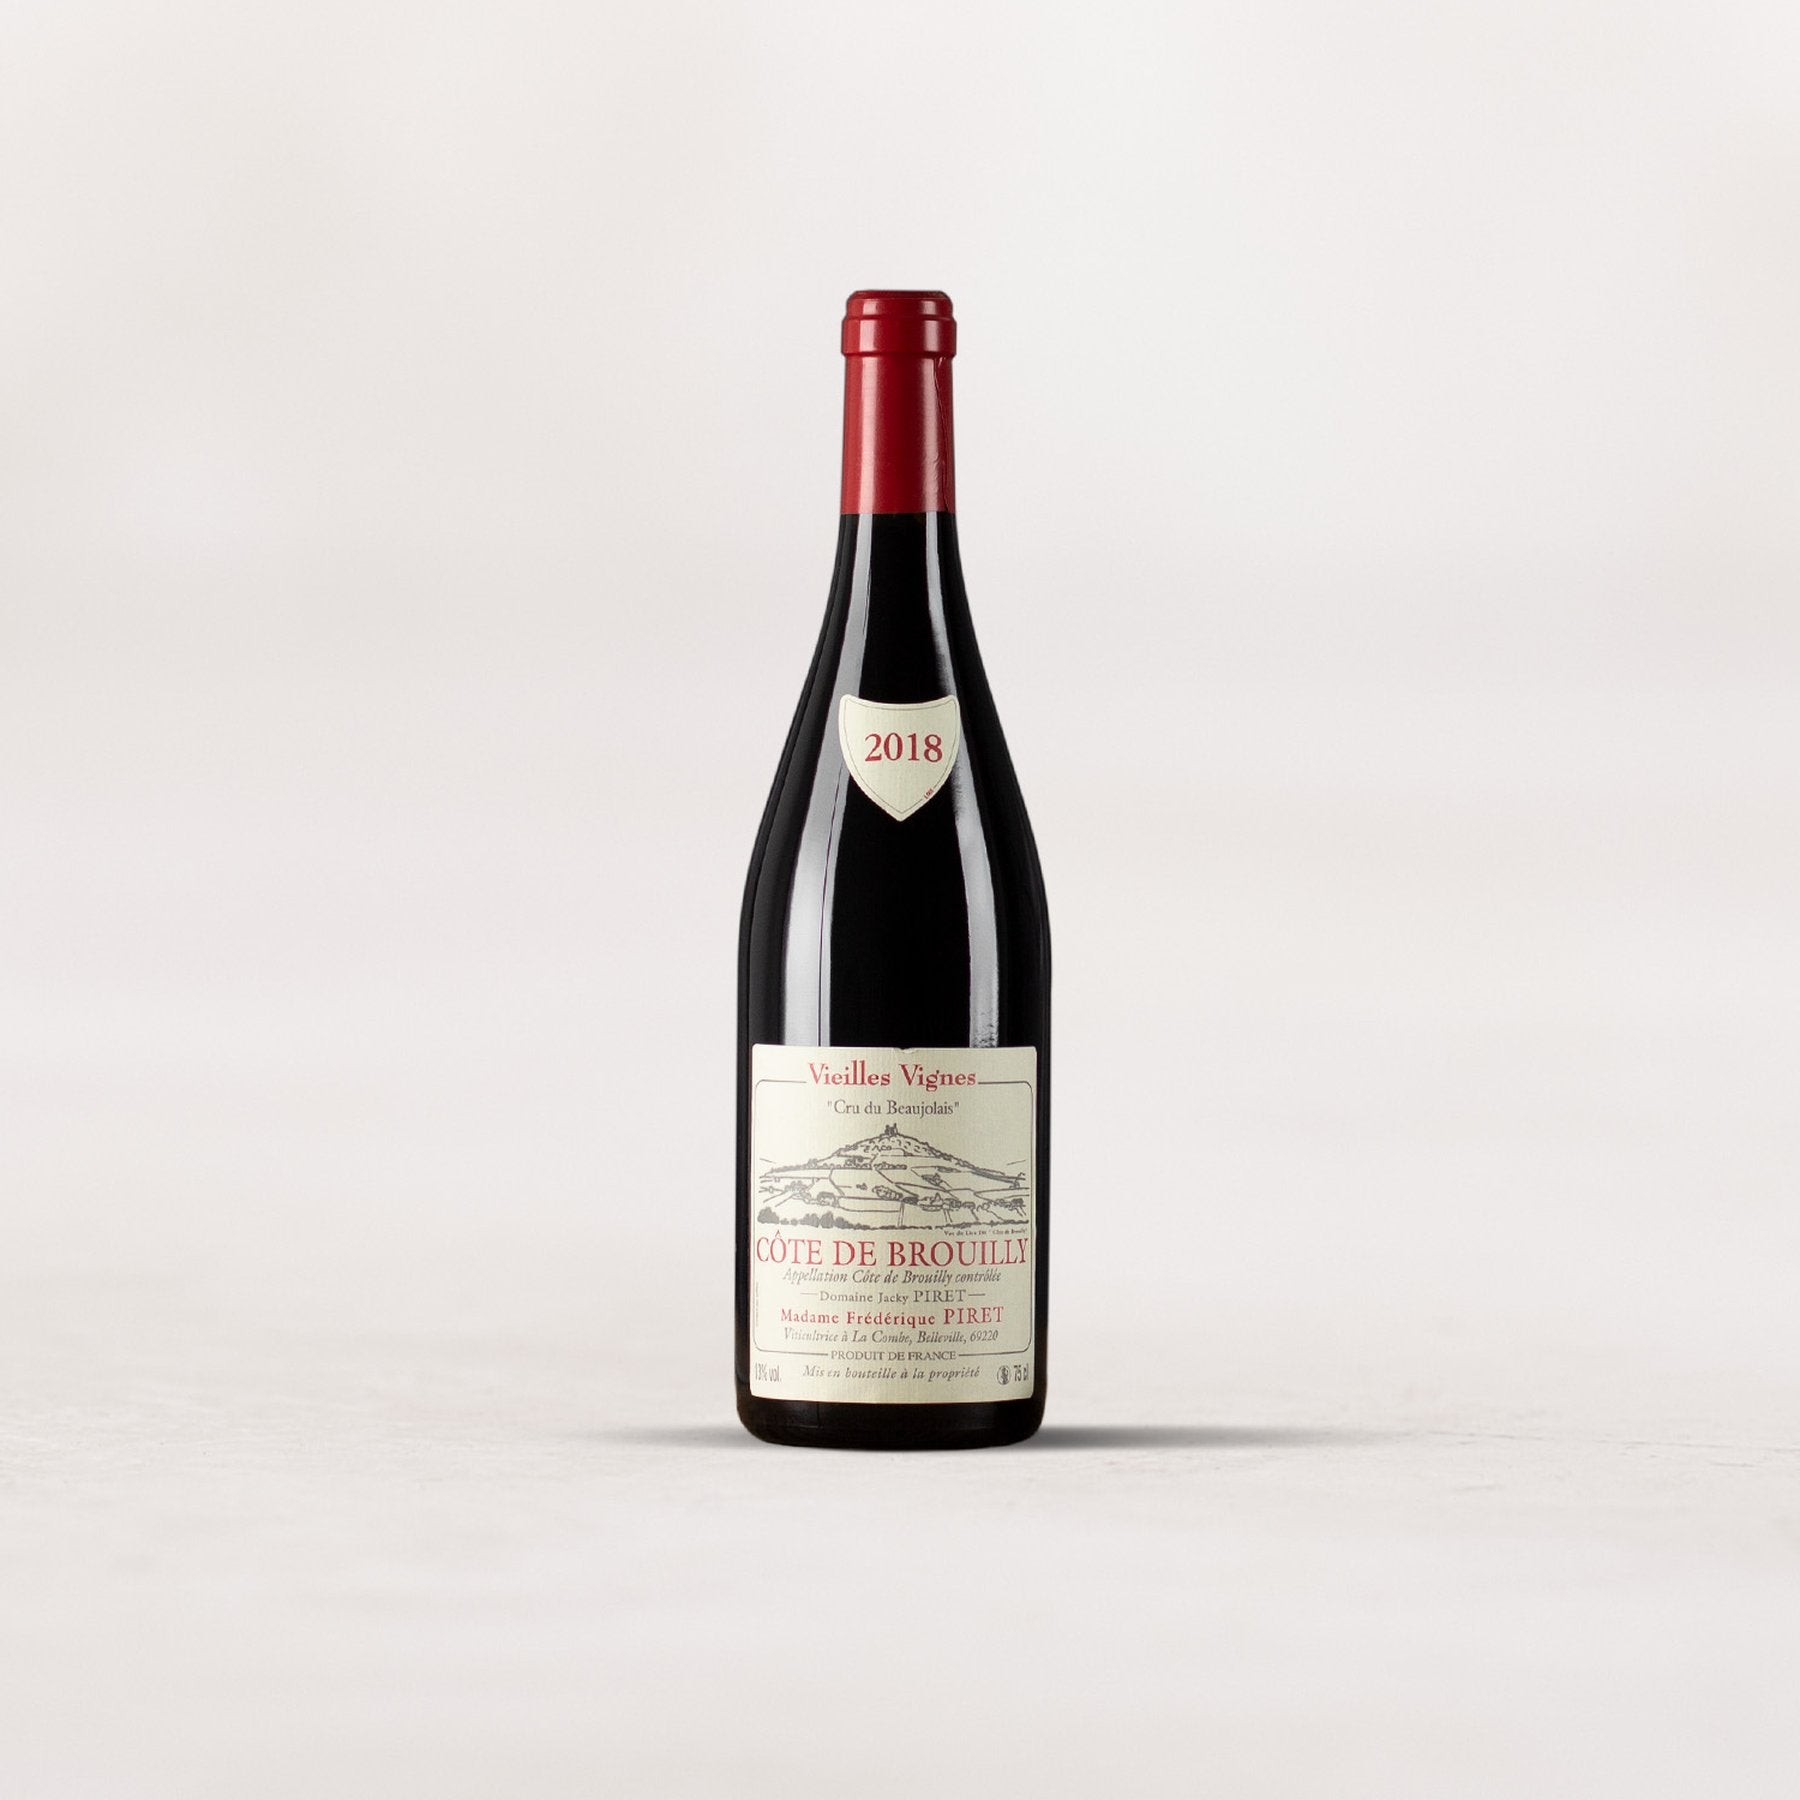 Jacky Piret, Côte de Brouilly “Vieilles Vignes”